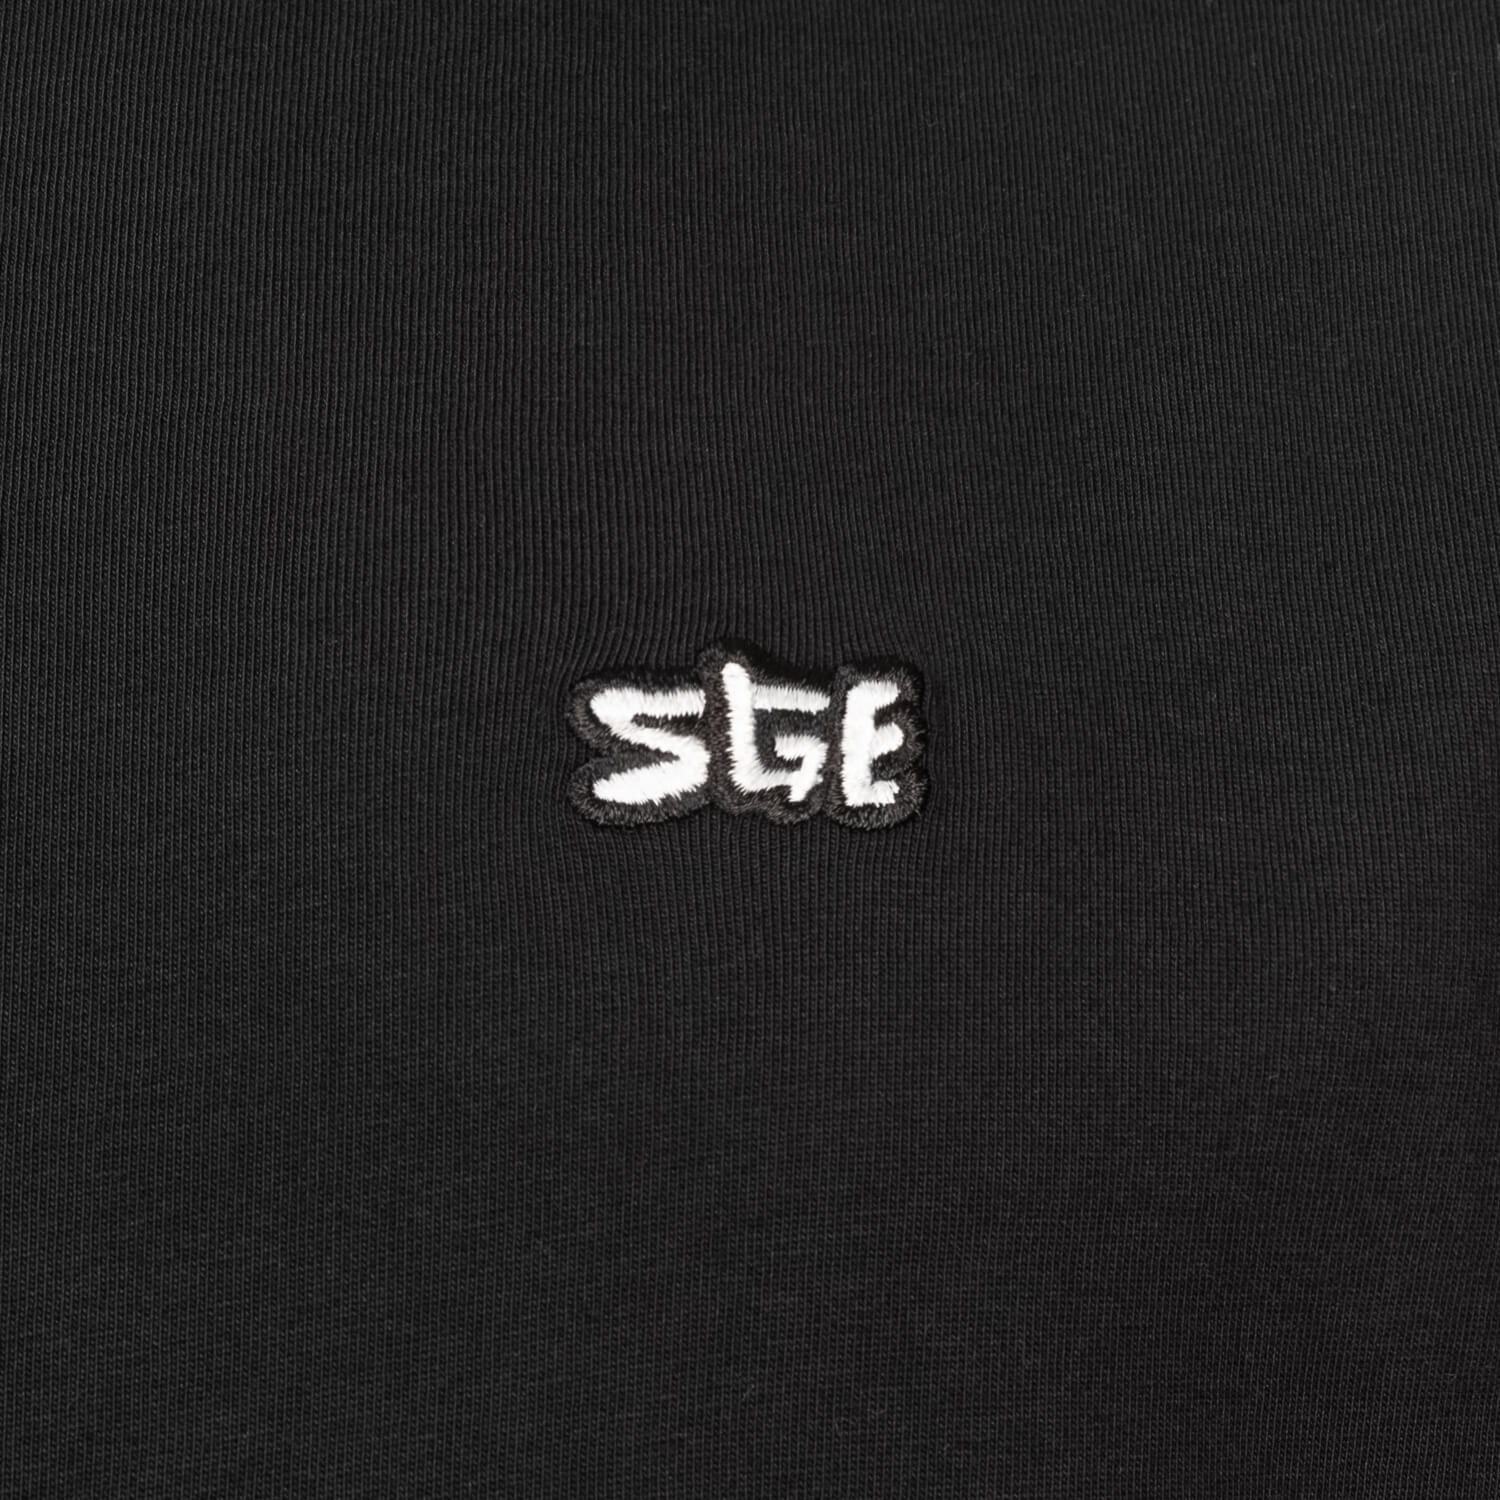 Bild 5: T-Shirt SGE Black & White